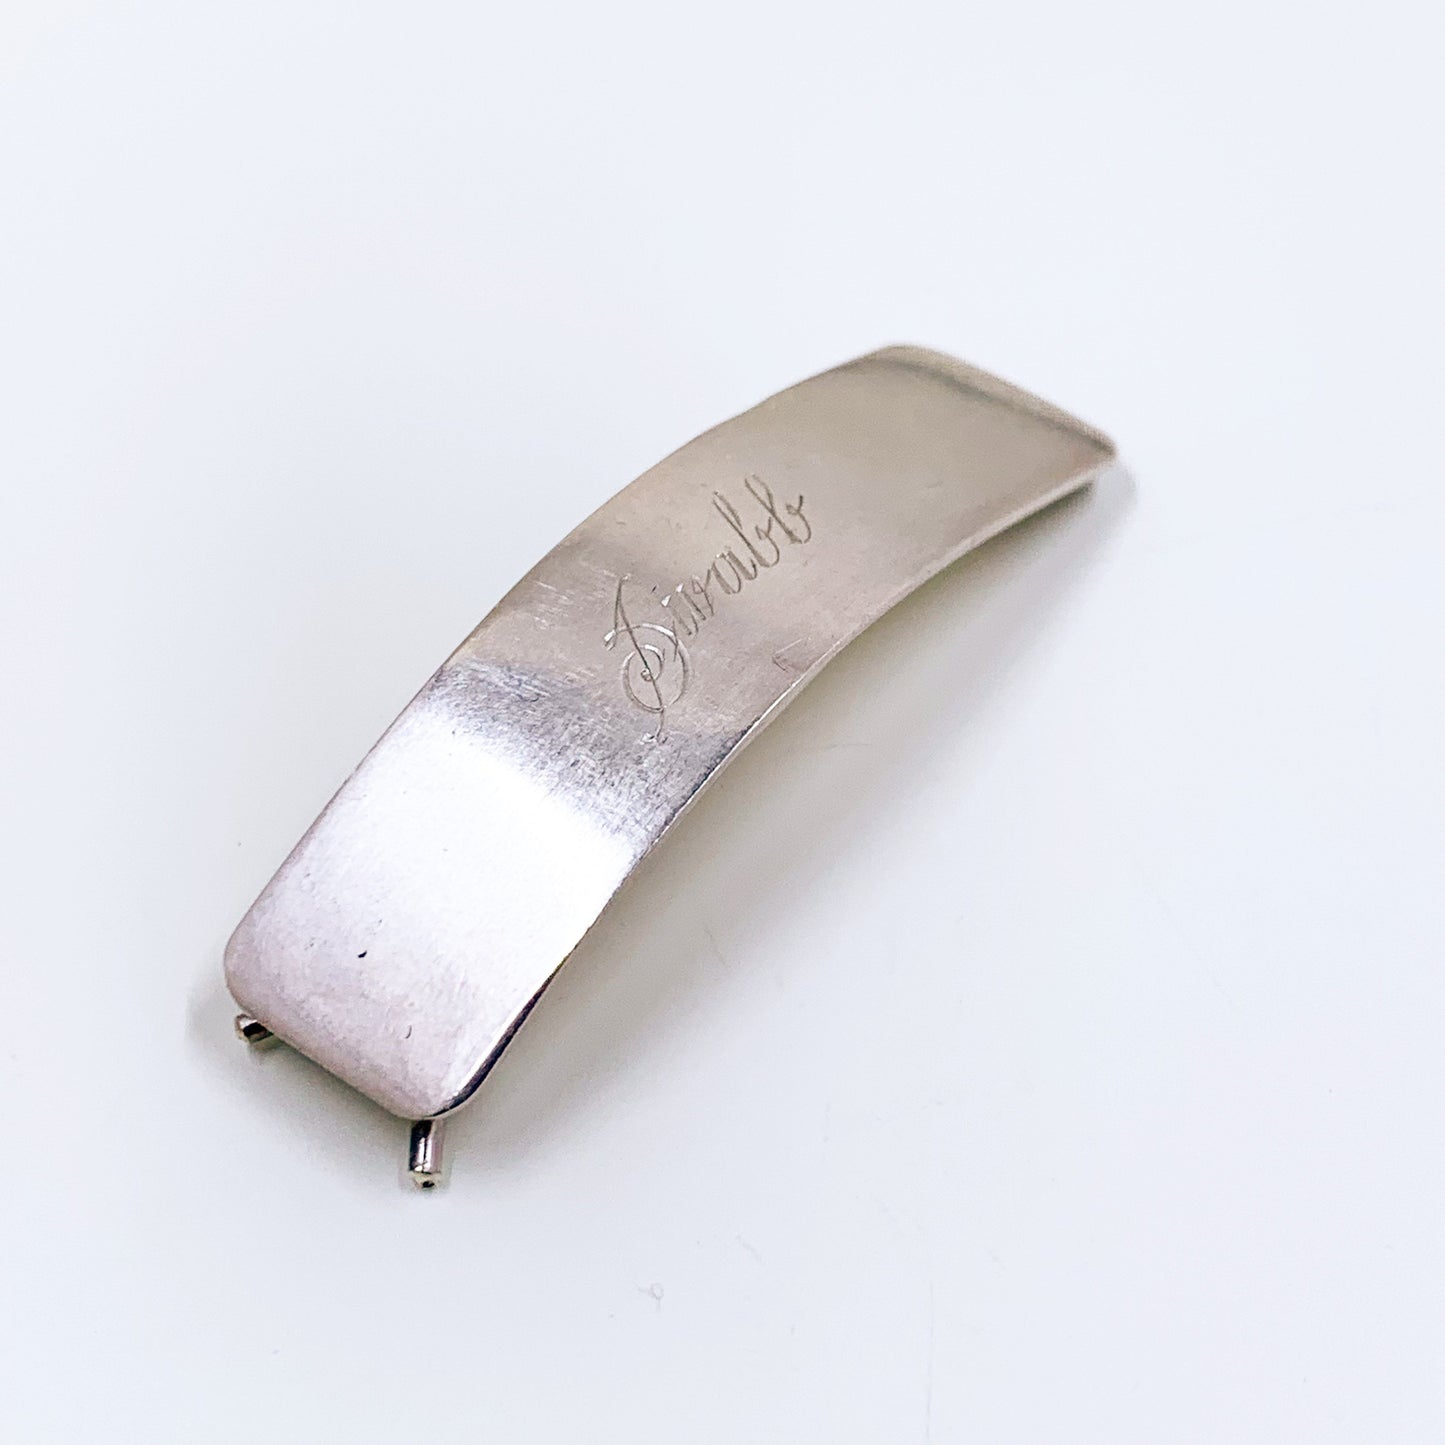 Vintage Sterling Silver Engraved Barrette | "Swabb” Name Engraved Barrette